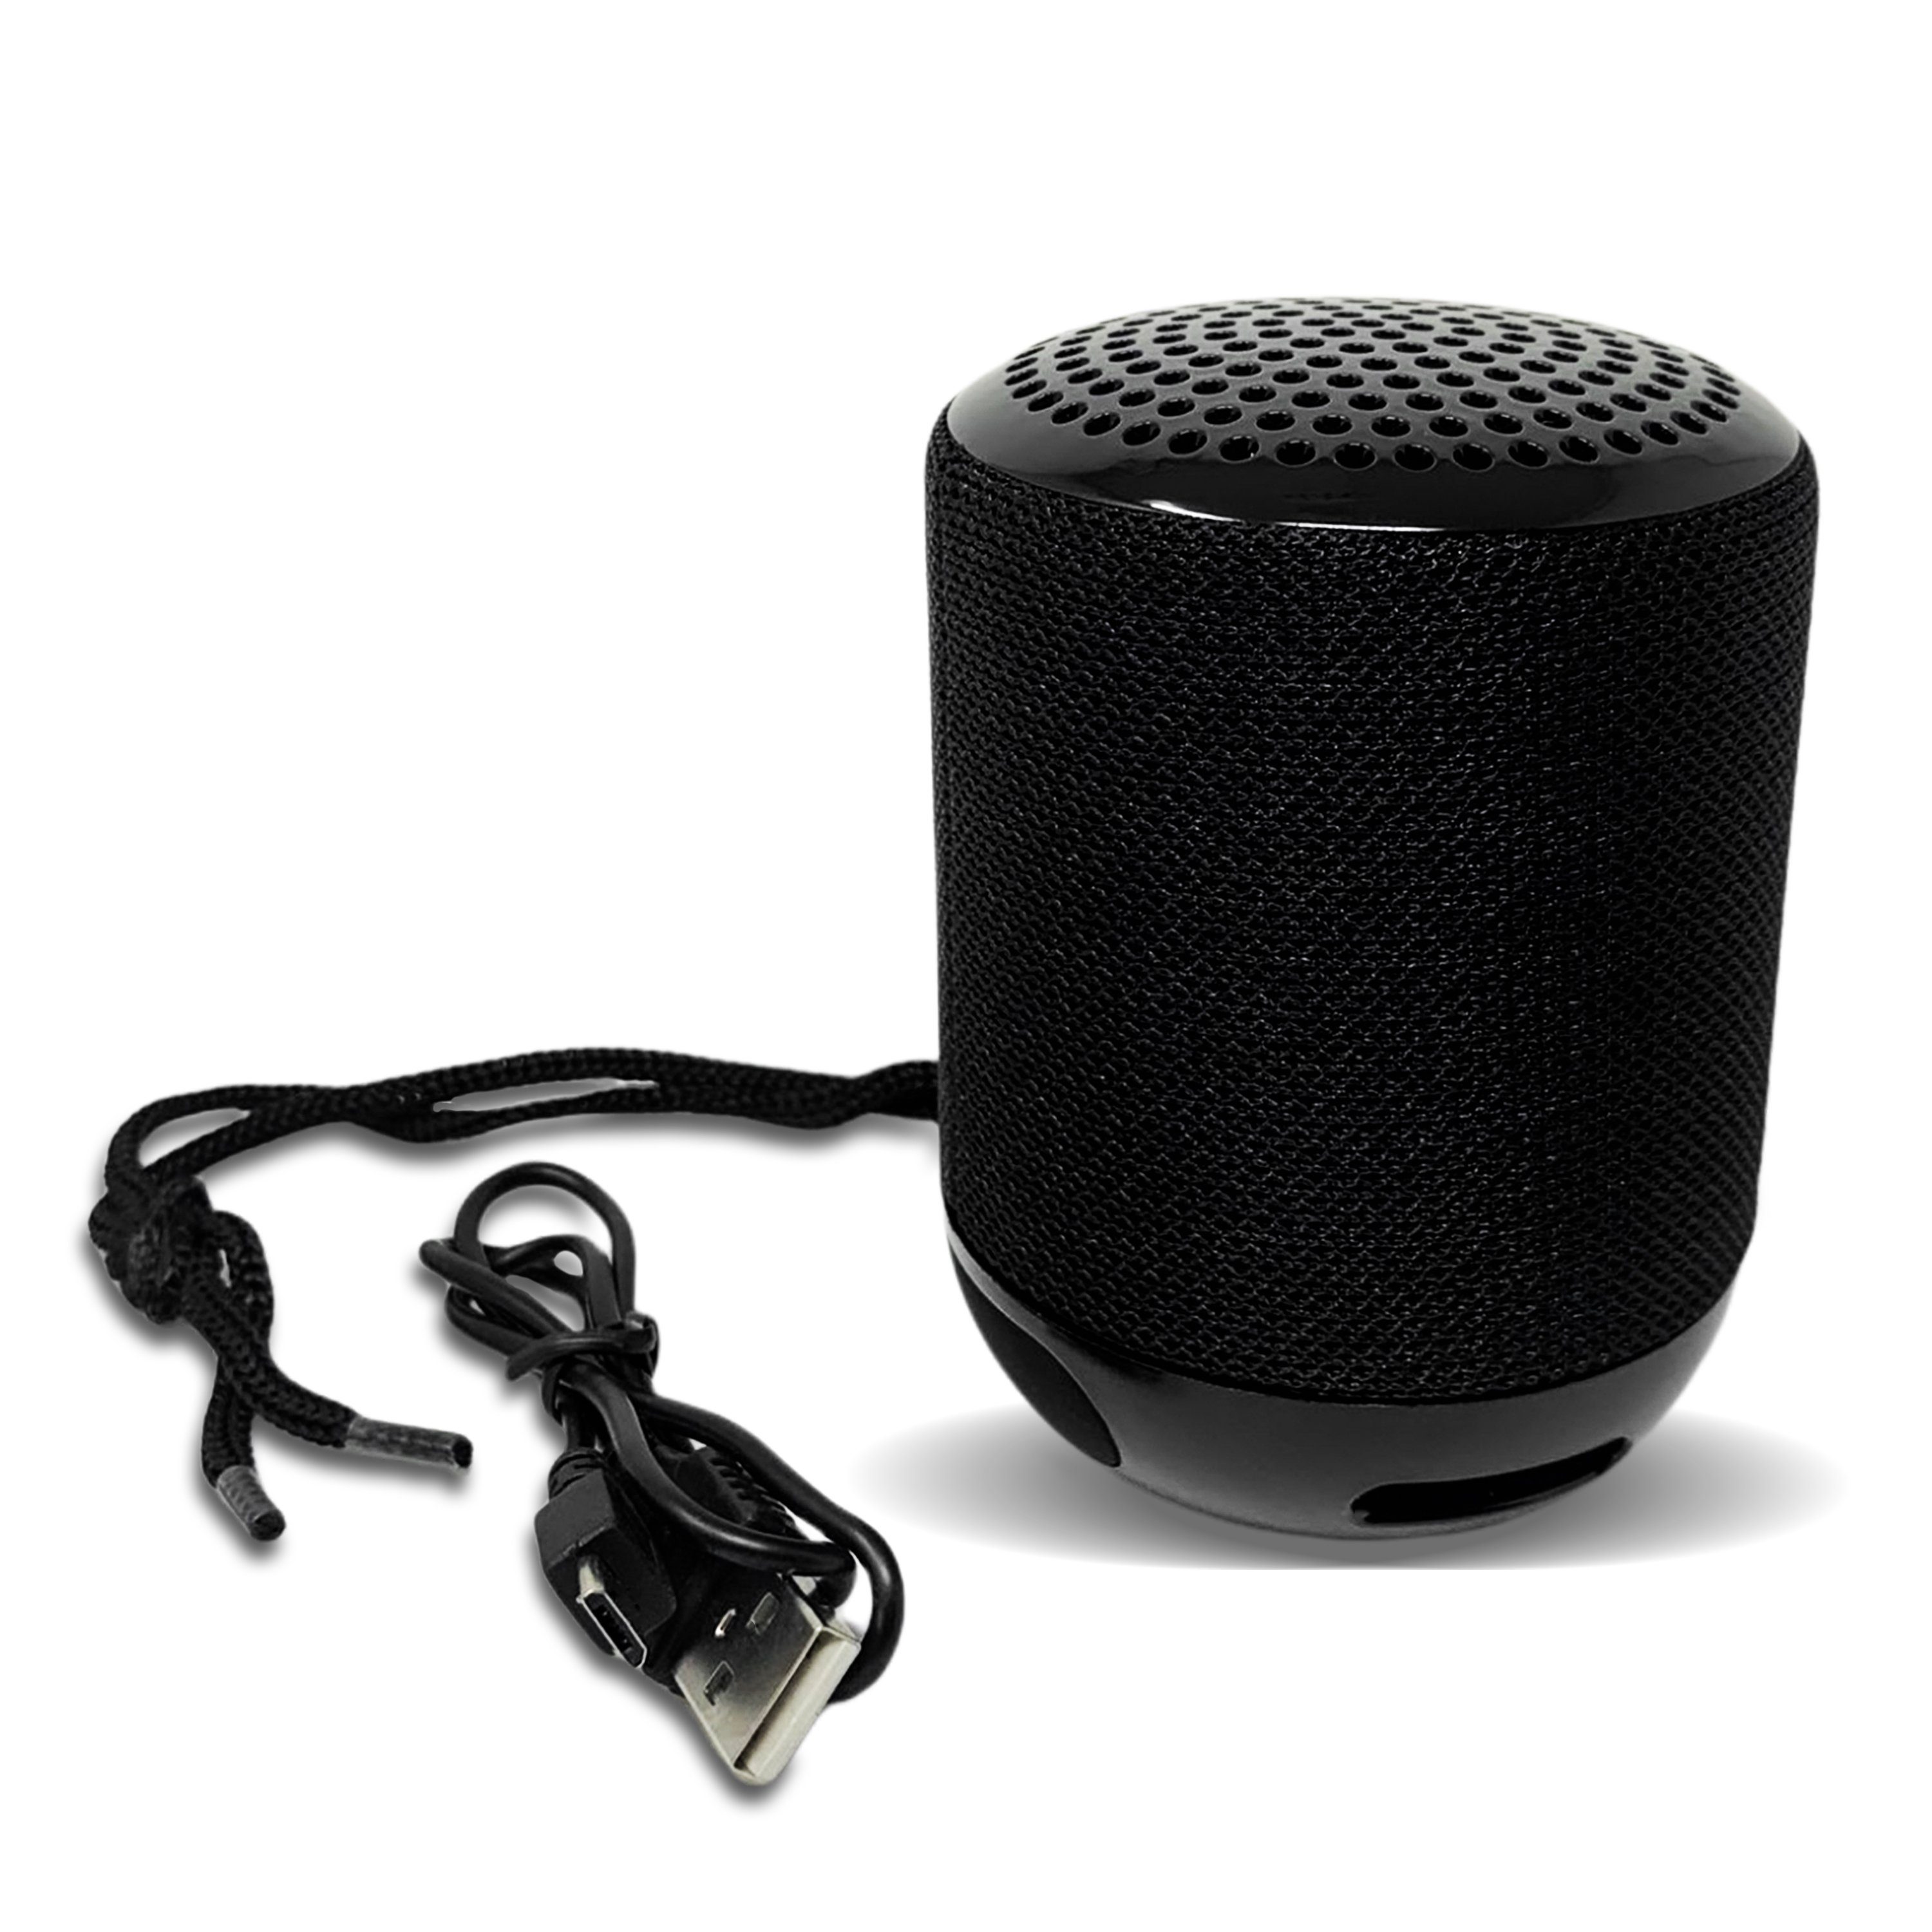 H-basics Bluetooth Lautsprecher - Wireless Speaker, Tragbare Musikbox,  Kabellos mit Akku, Ideal für Outdoor Camping Wandern Pool  Bluetooth-Lautsprecher online kaufen | OTTO